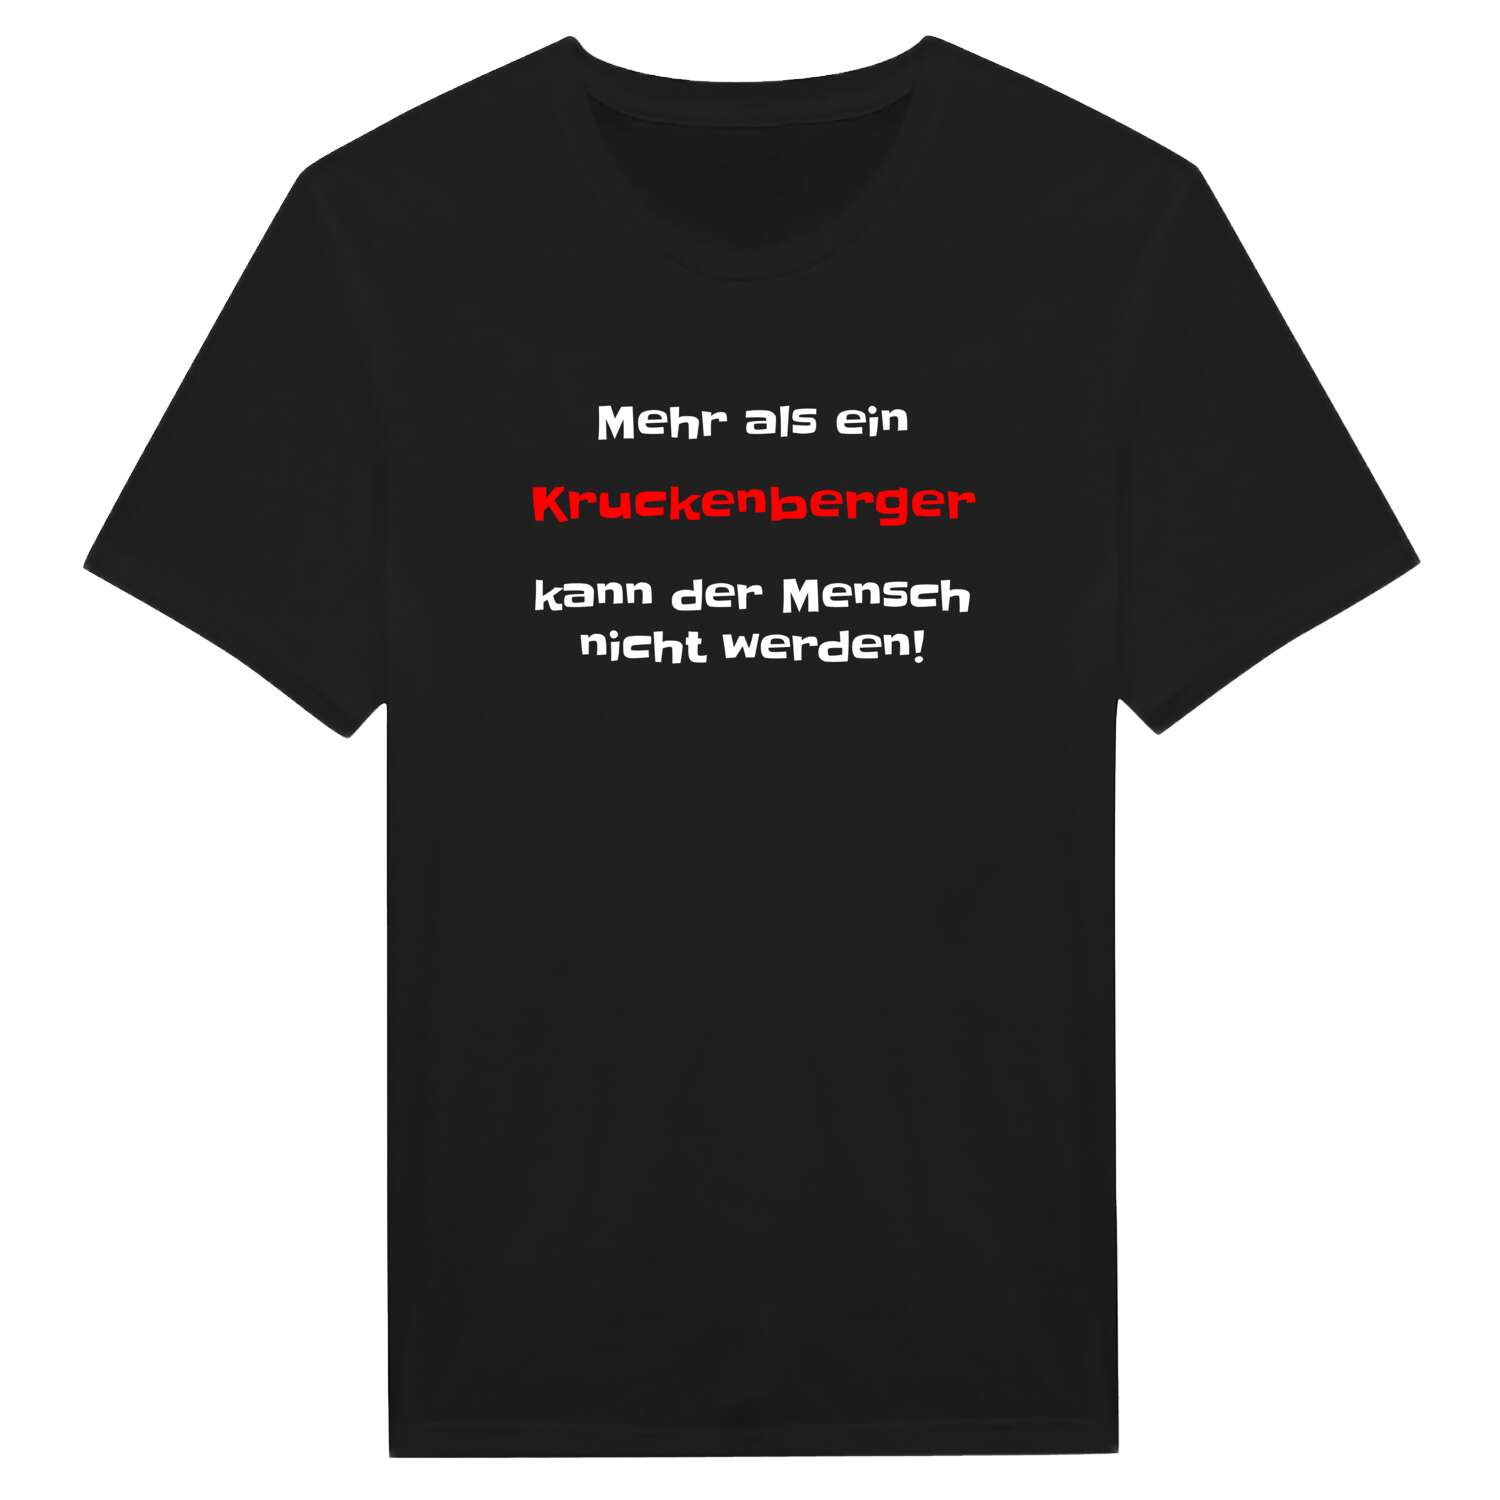 Kruckenberg T-Shirt »Mehr als ein«